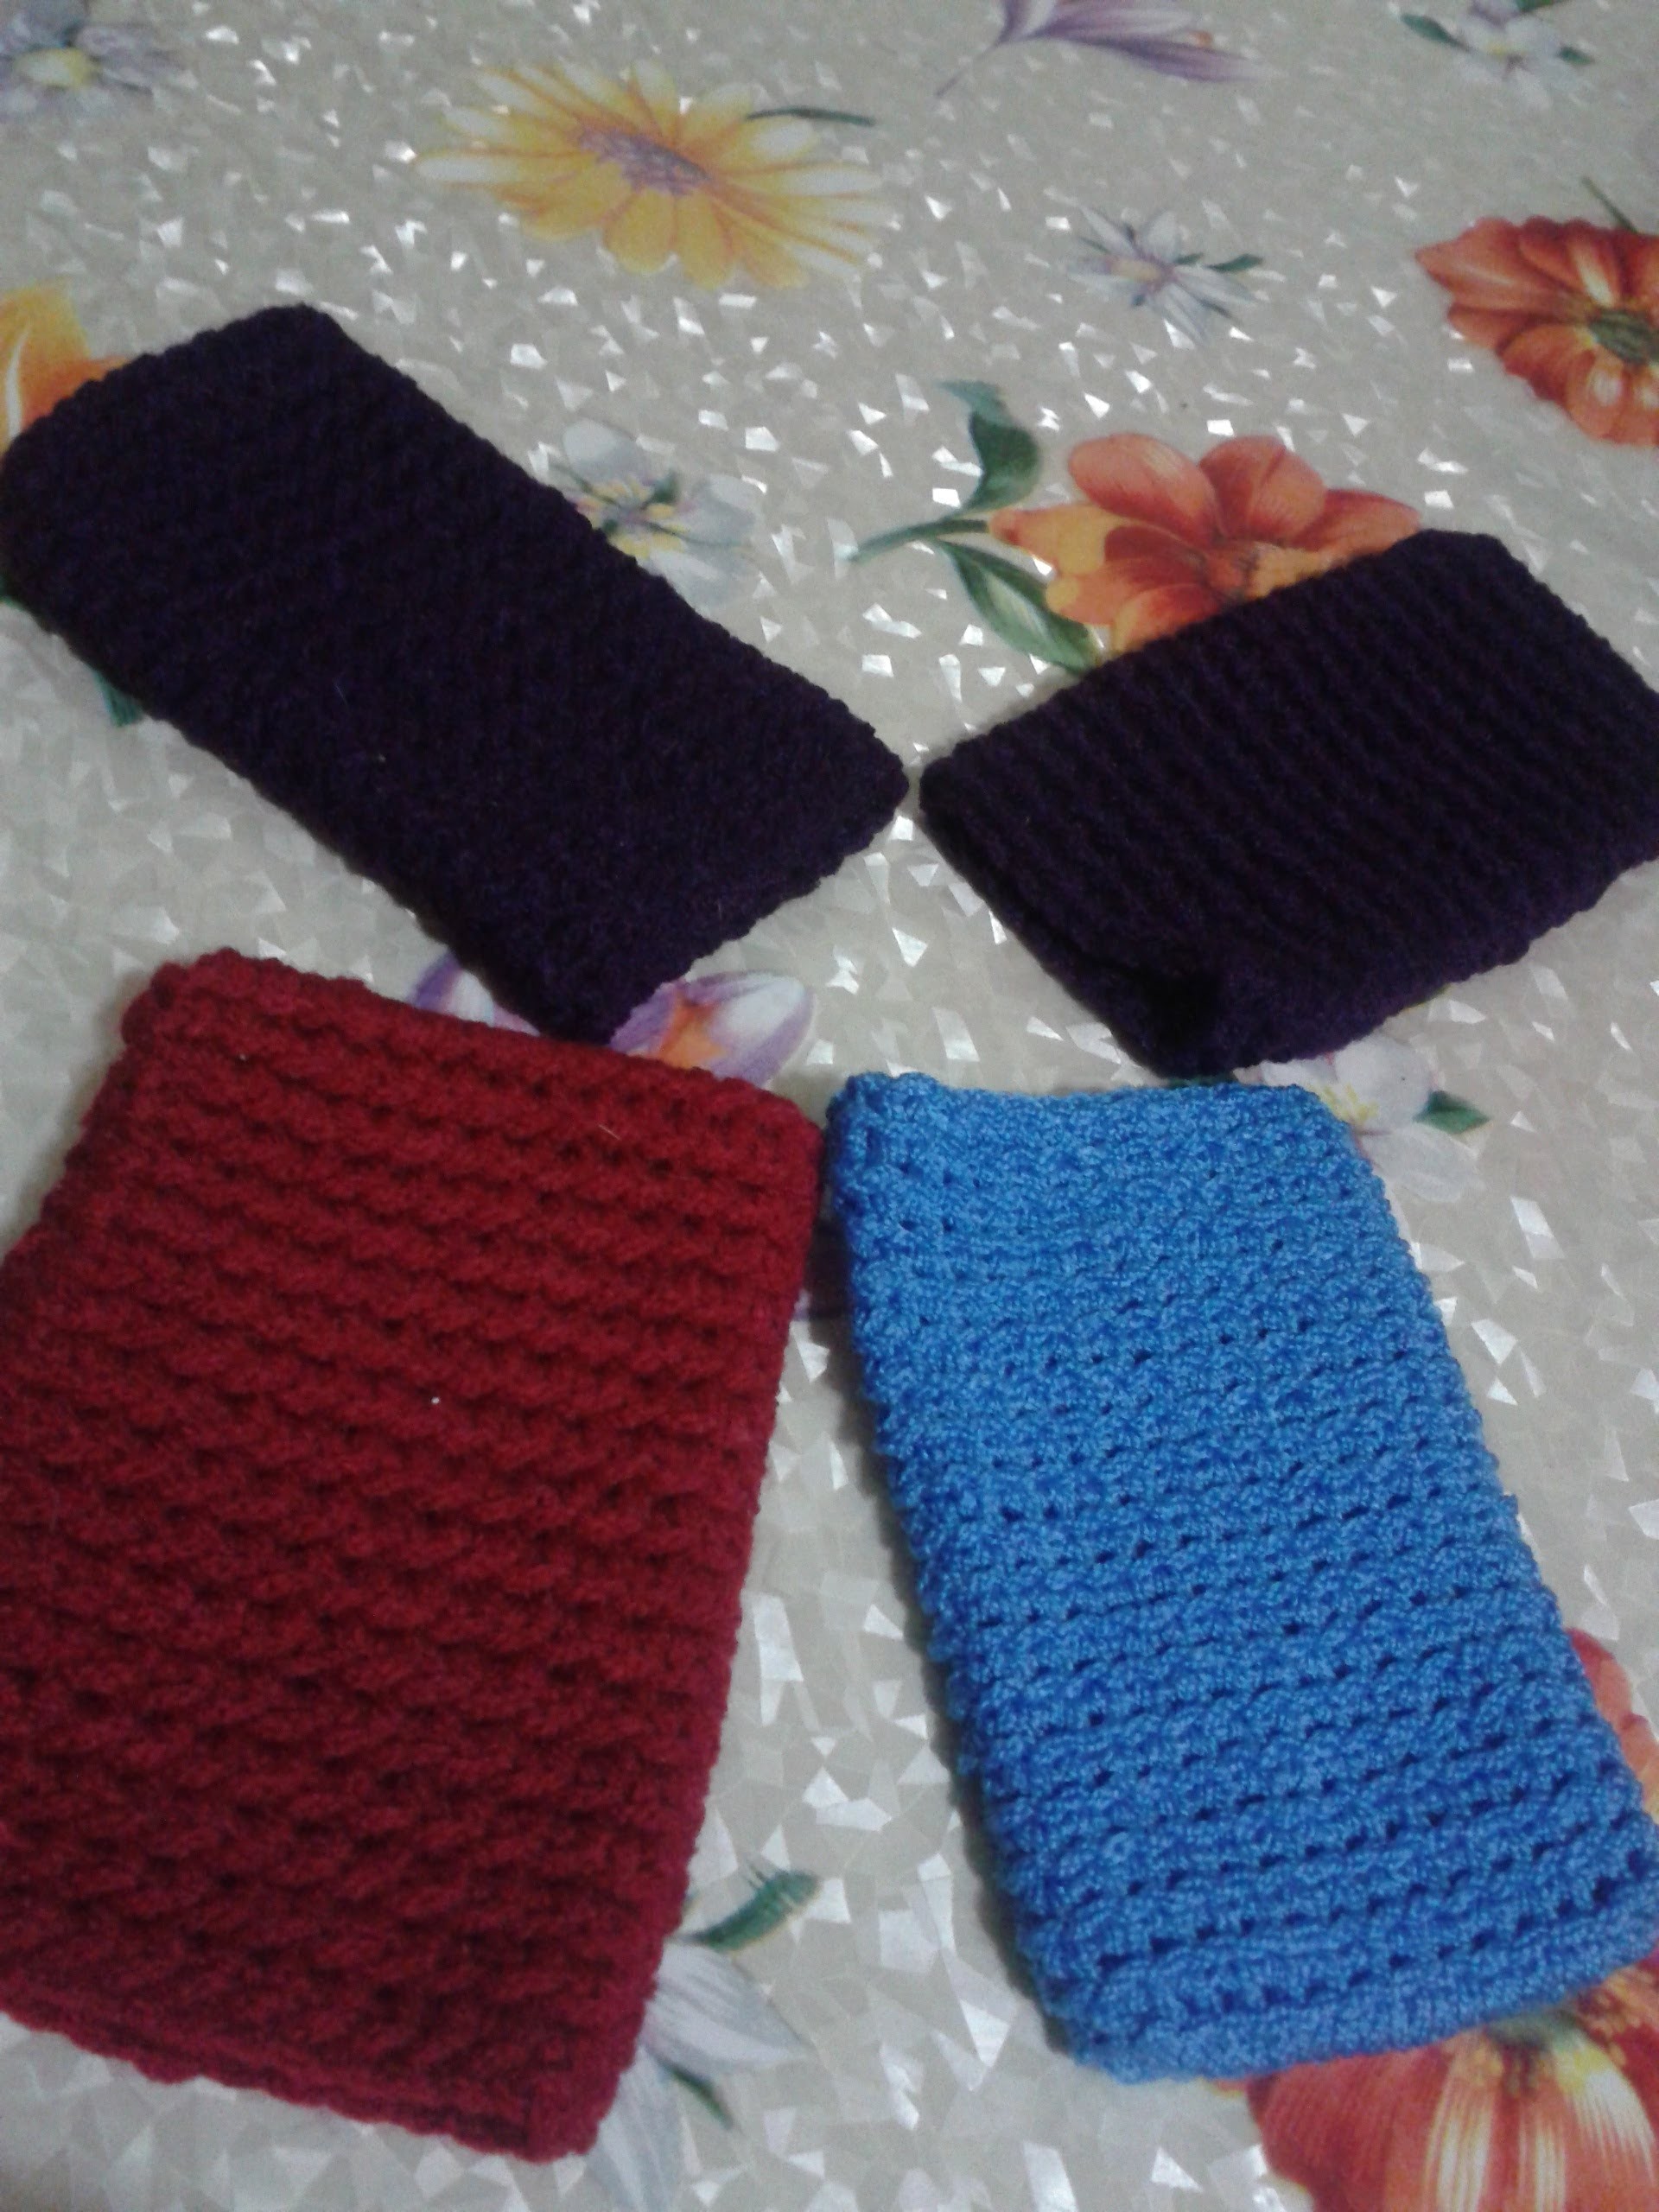 Cómo tejer con gancho (crochet) una funda para celular.